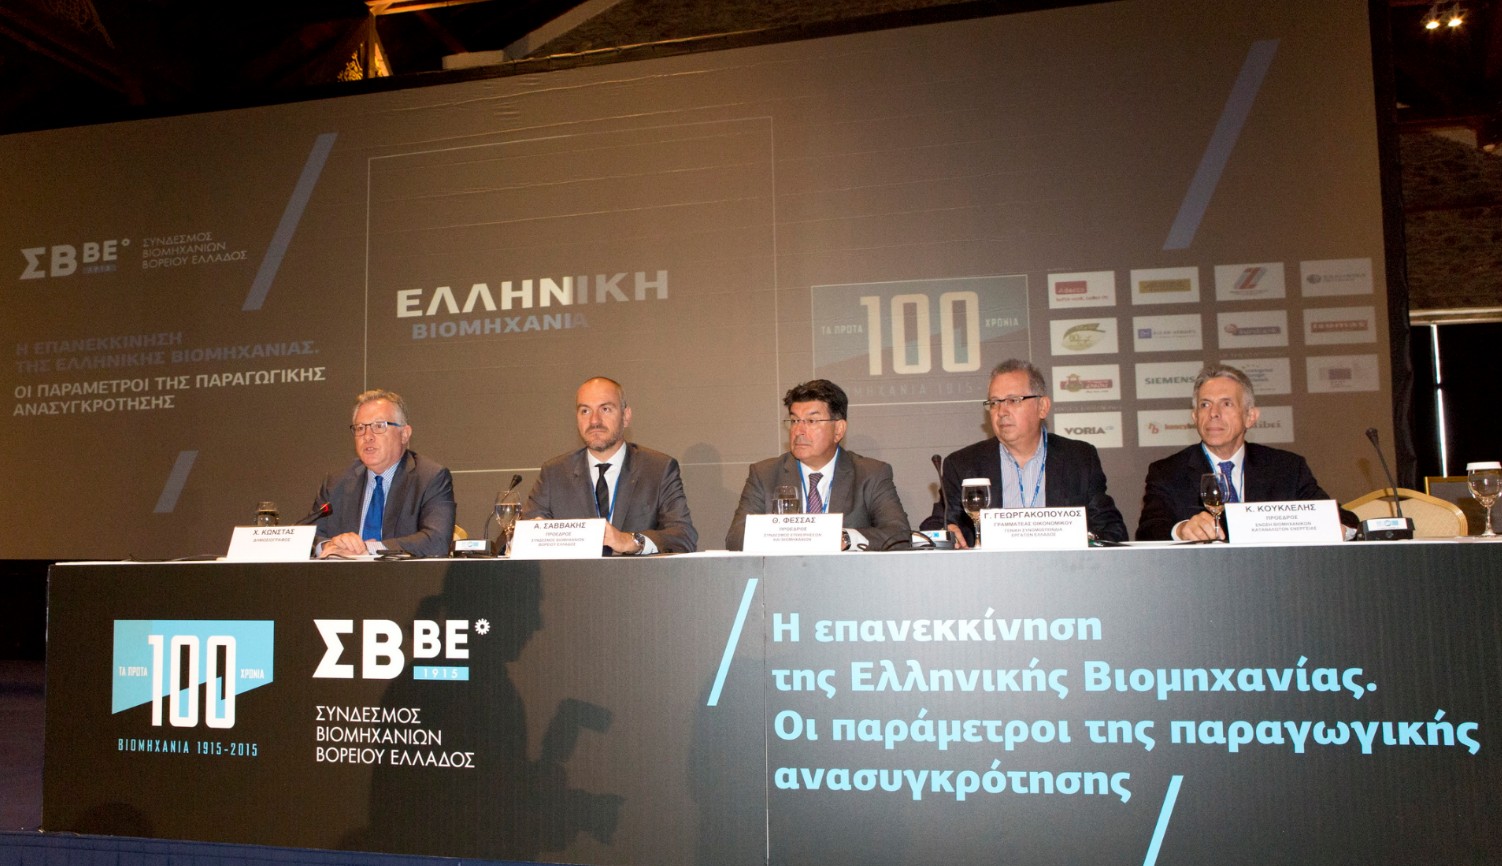 Πακέτο μέτρων «Αναπτυξιακής εξισορρόπησης» προτείνει ο ΣΒΒΕ - Συνέδριο με θέμα: «Επανεκκίνηση της Ελληνικής Βιομηχανίας. Οι παράμετροι της παραγωγικής ανασυγκρότησης»